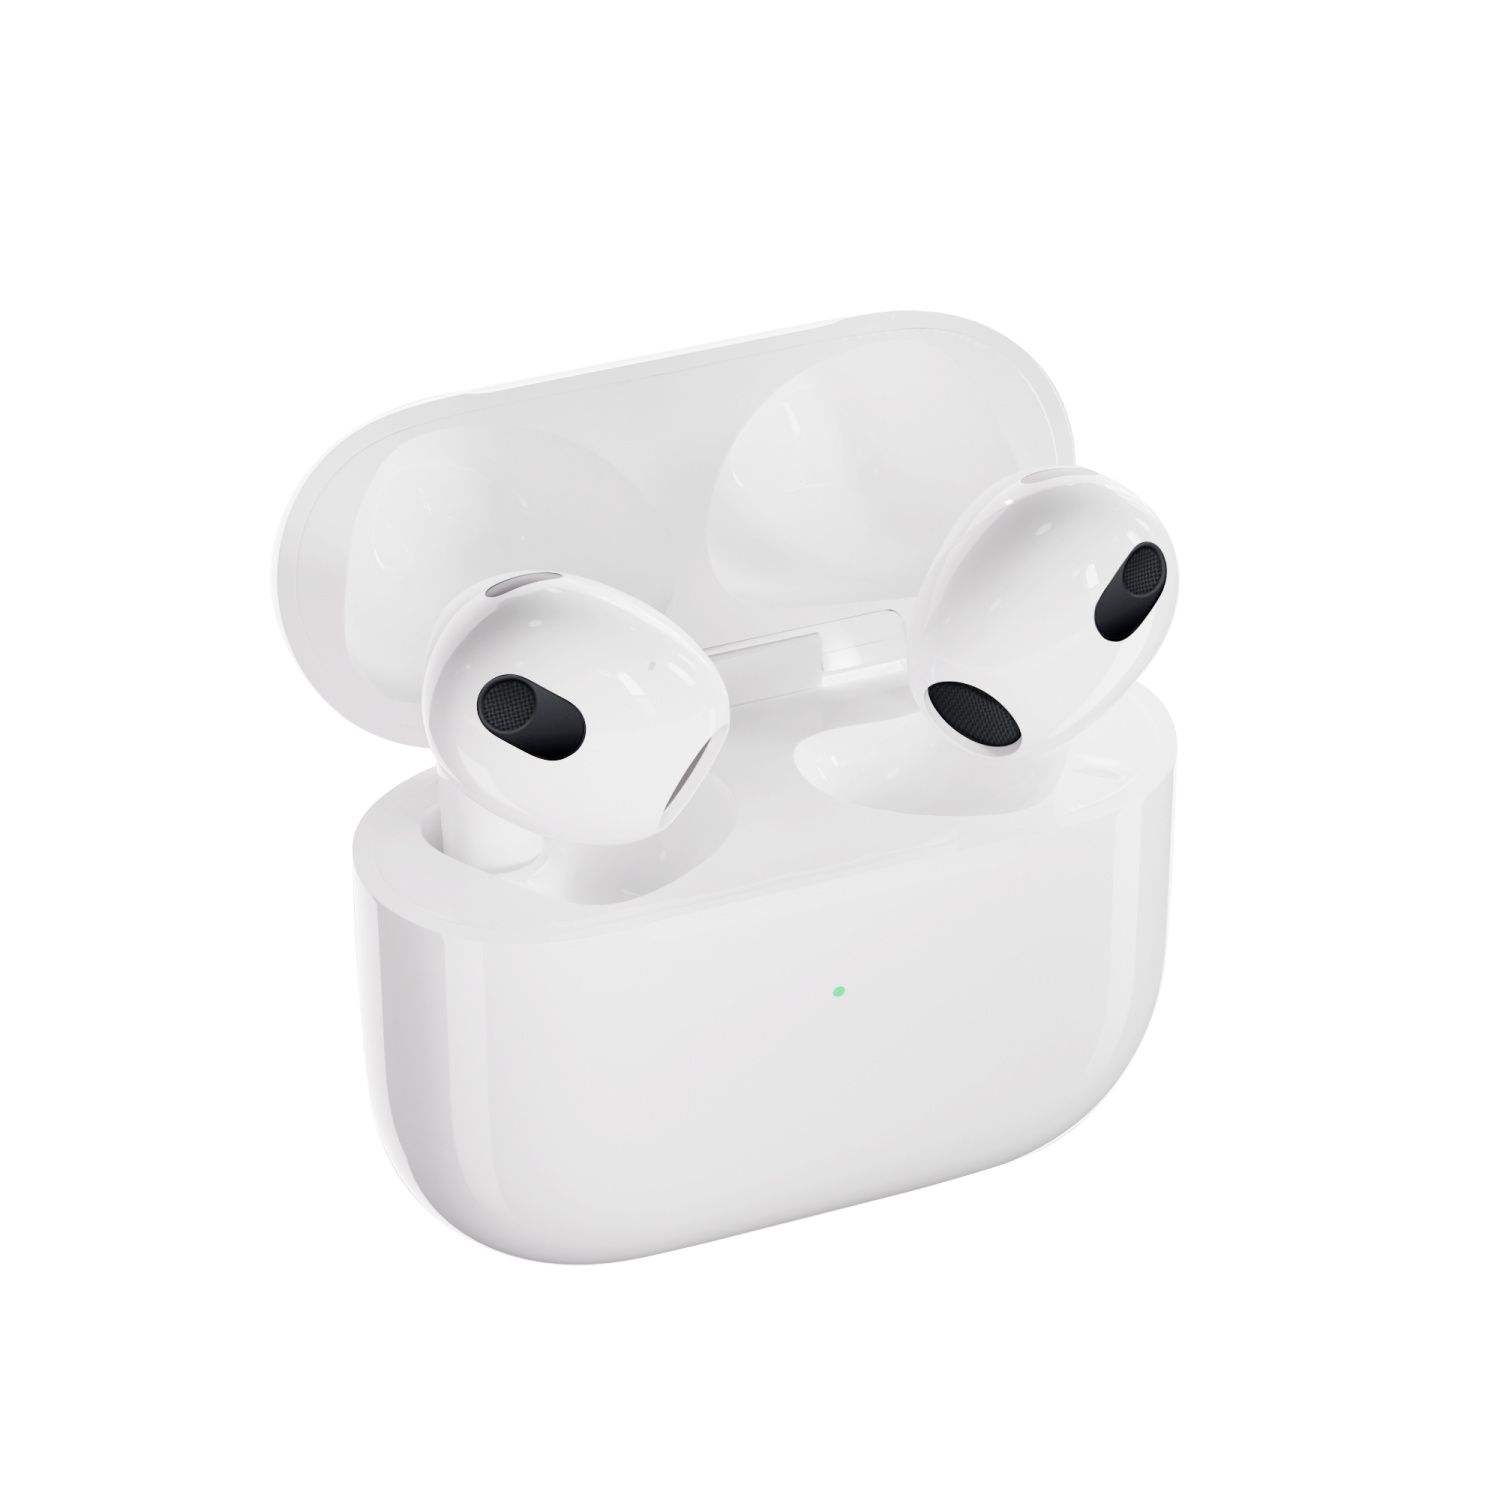 苹果/Apple AirPods3代半入耳式蓝牙耳机有线充电配闪电充电盒 929元包邮